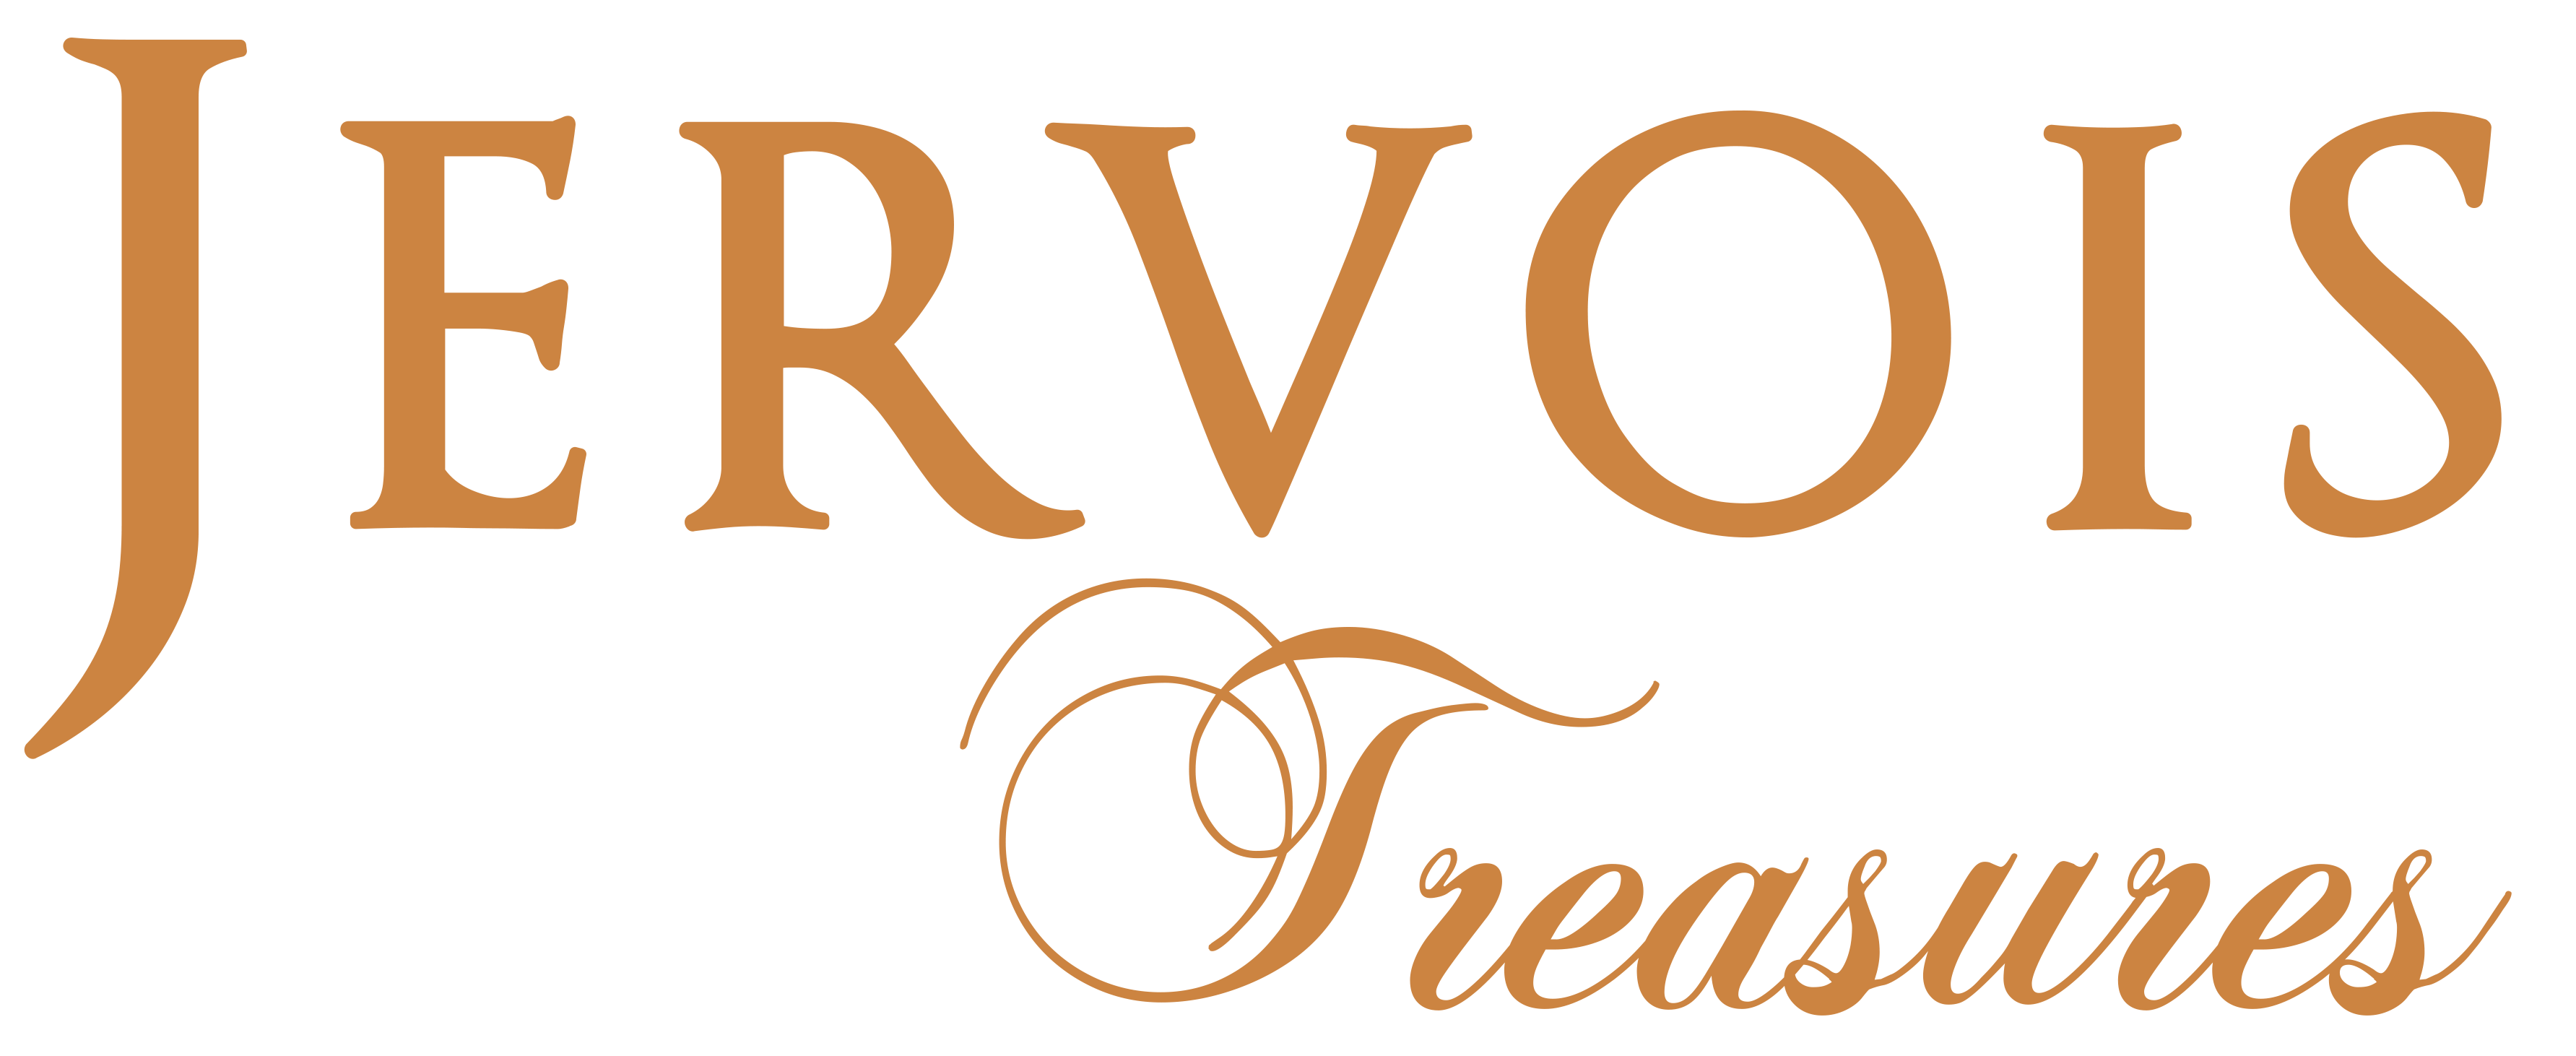 Jervois_Treasures-Logo_Color